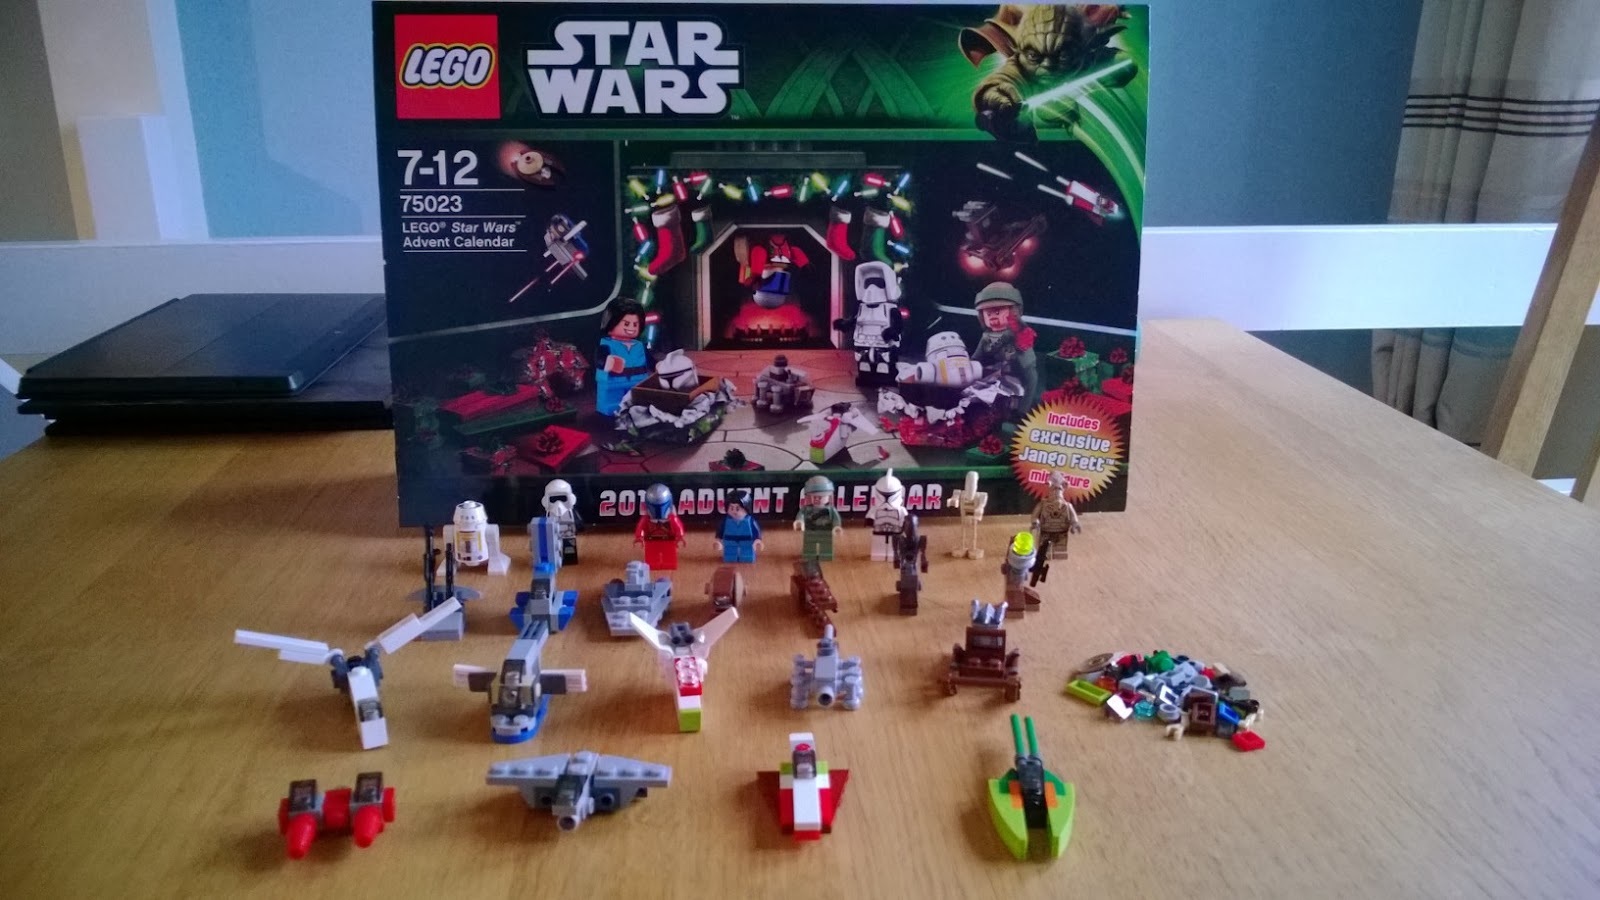 Lego Star Wars advent calendar 2013